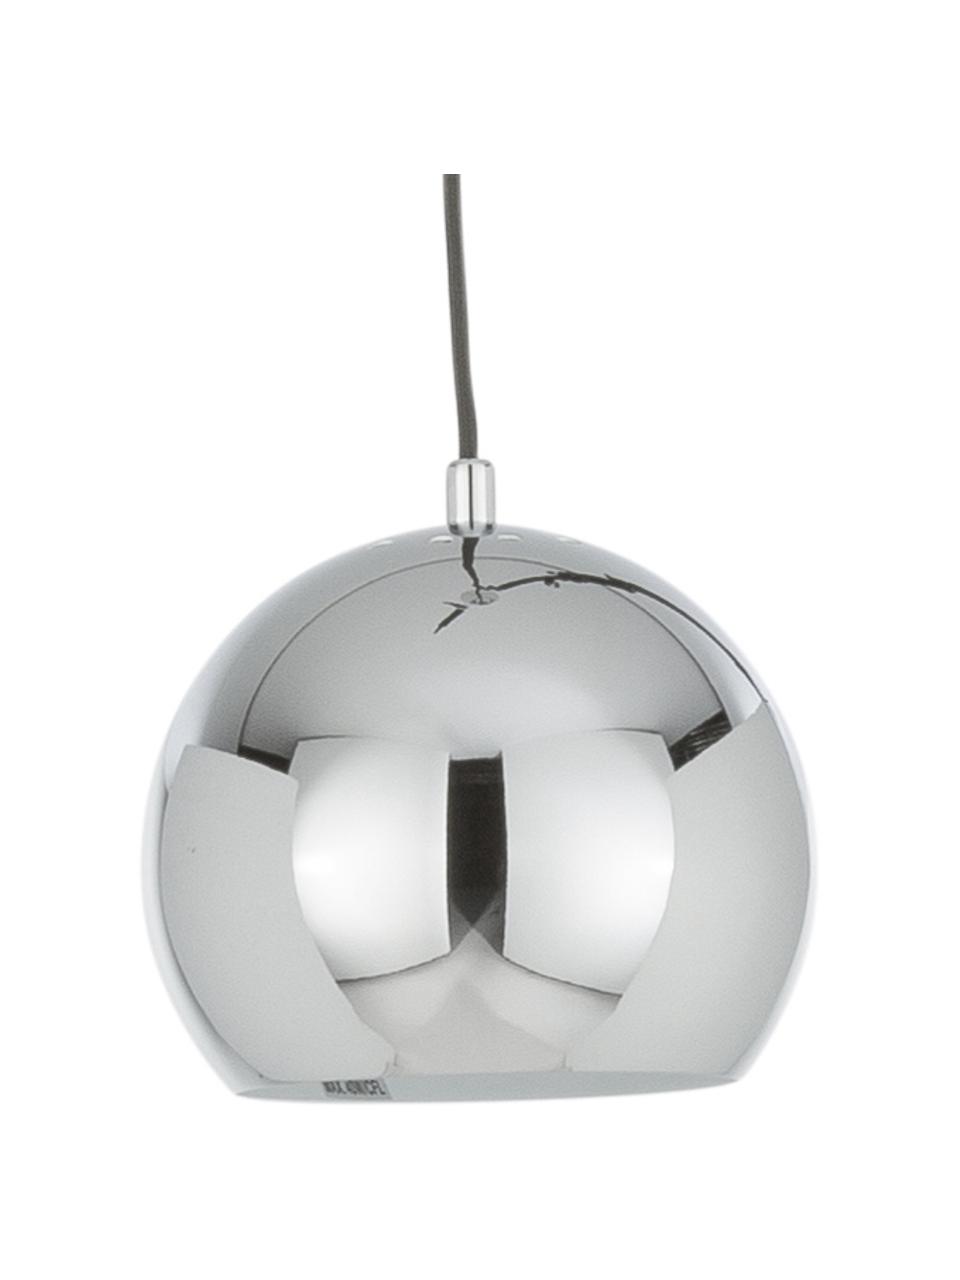 Malé závěsné svítidlo ve tvaru koule Ball, Chromovaný kov, Ø 18 cm, V 16 cm